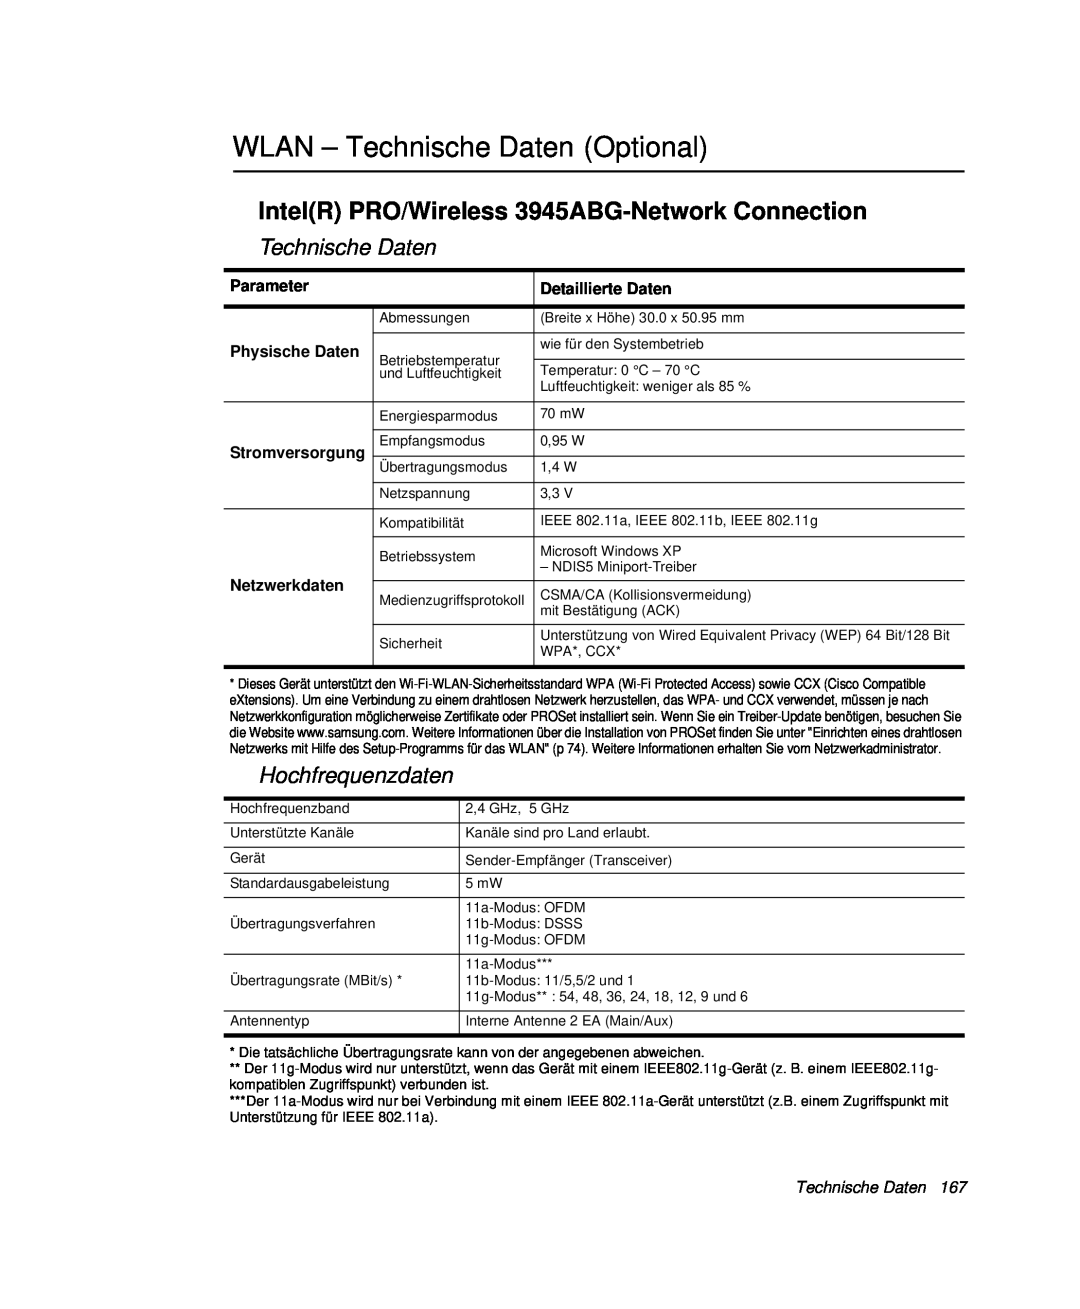 Samsung NP-P60KV00/SEG WLAN - Technische Daten Optional, IntelR PRO/Wireless 3945ABG-Network Connection, Hochfrequenzdaten 